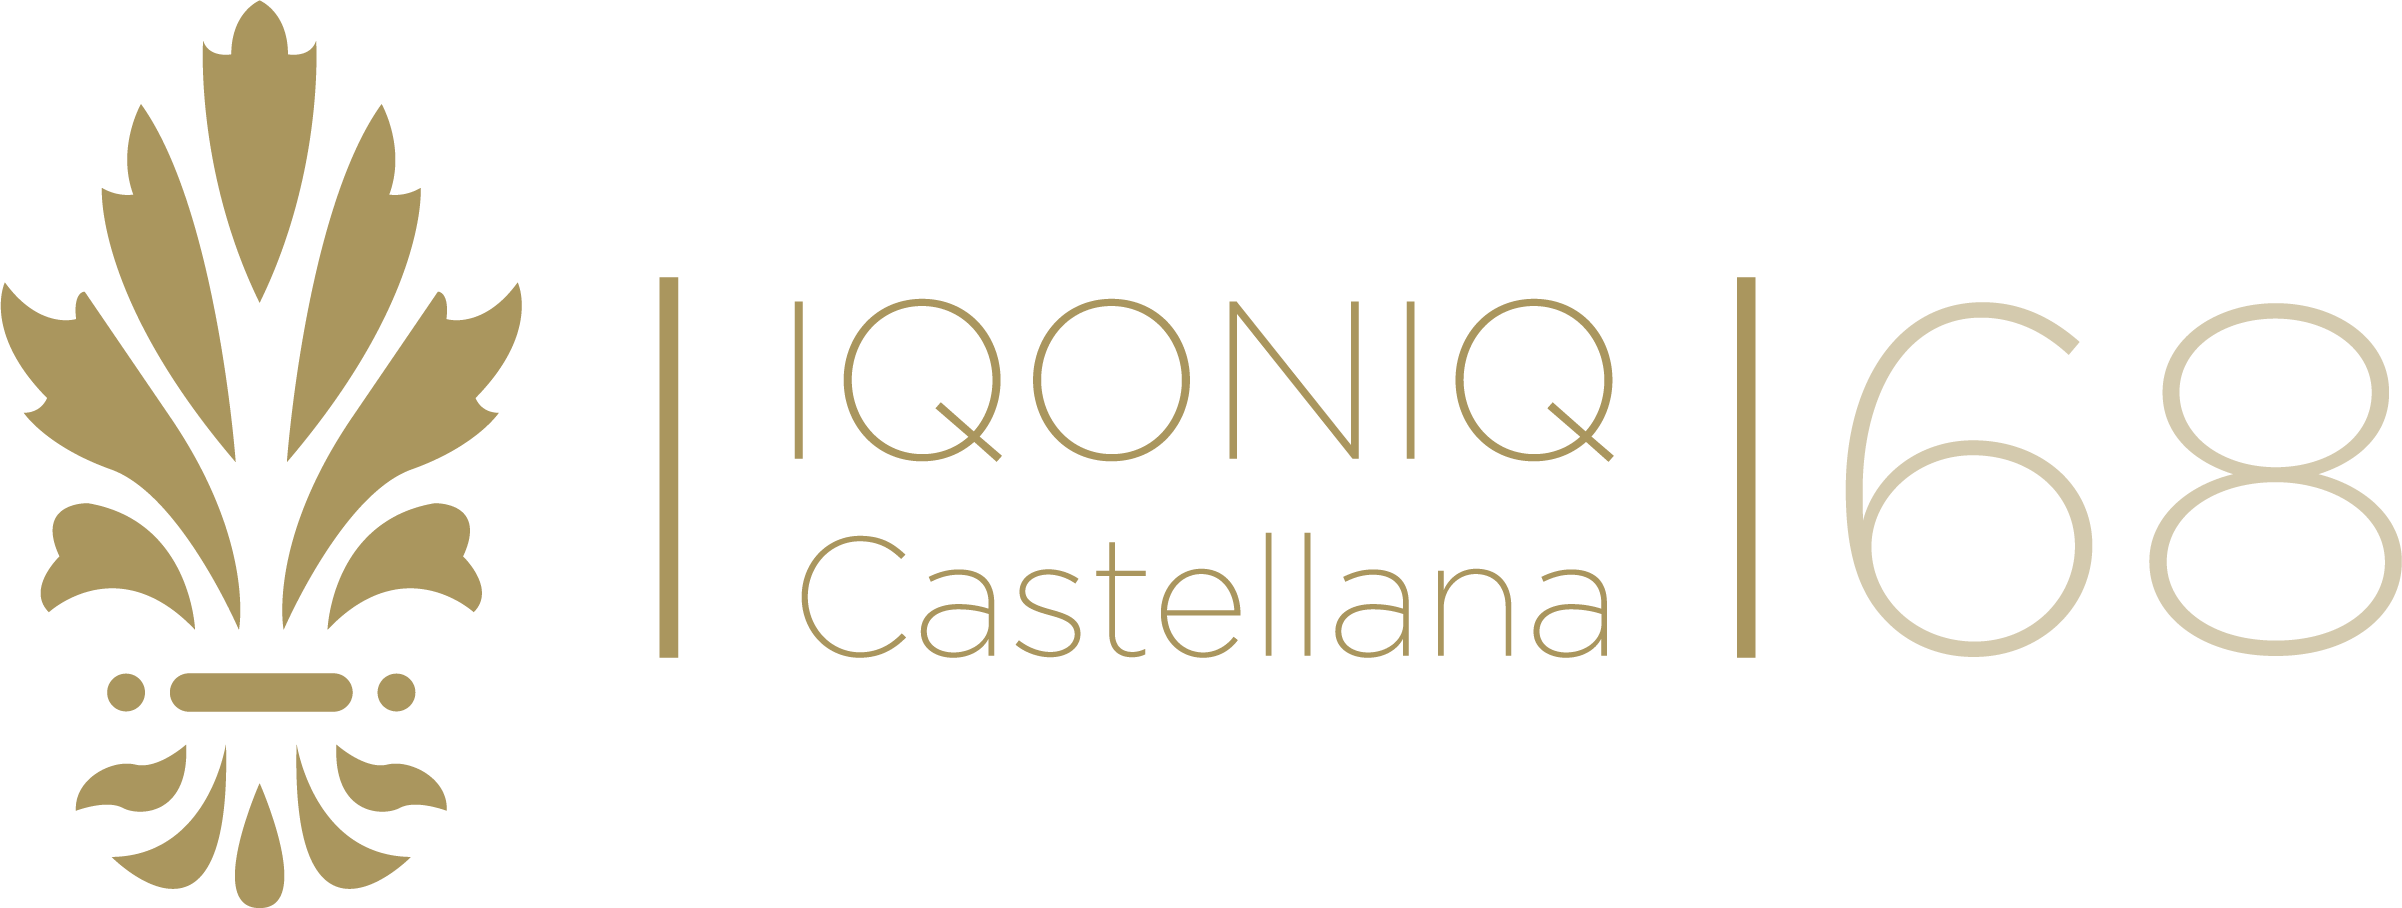 IQONIQ CASTELLANA 68